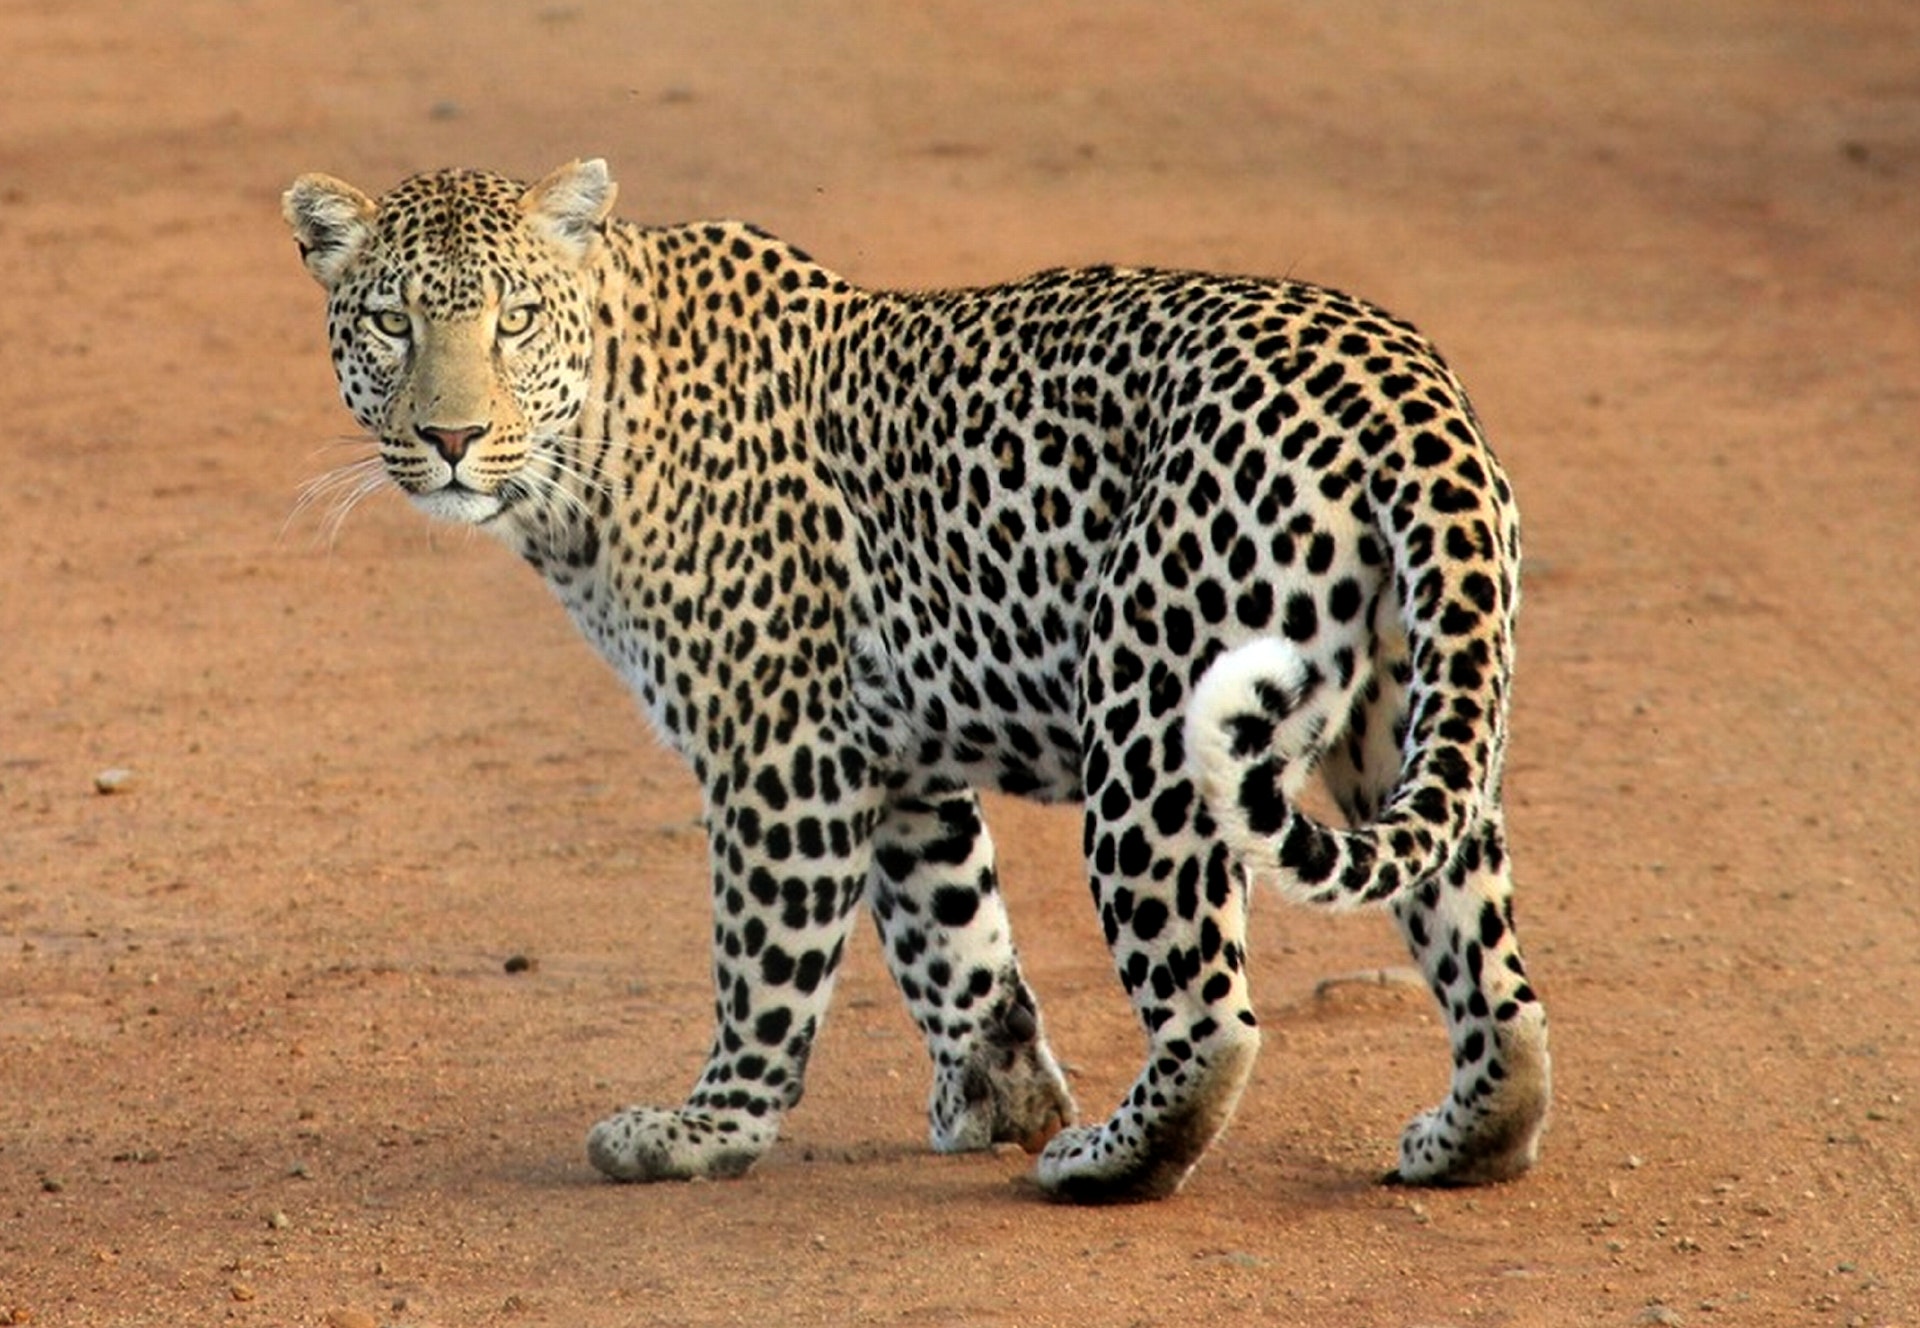 Leopard in a safari in africa